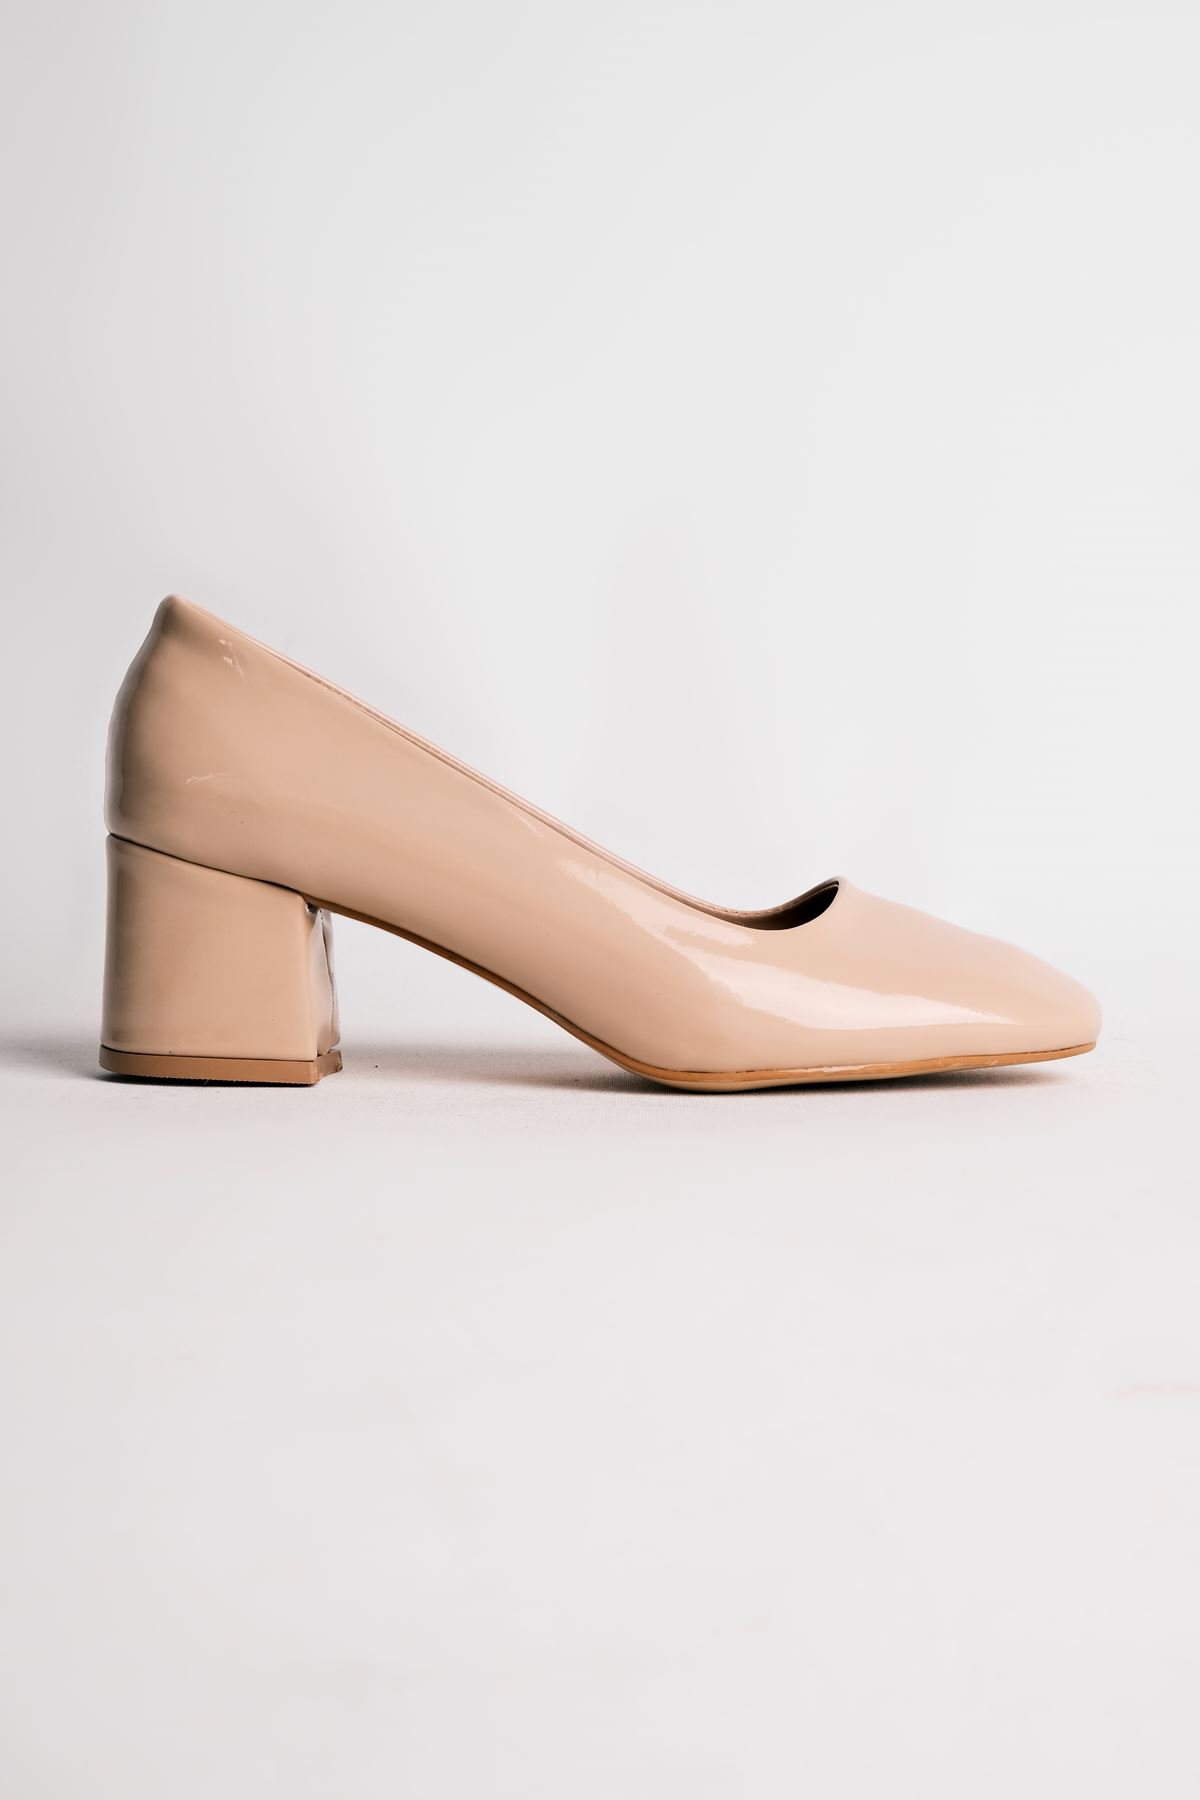 Edna Kadın Topuklu Ayakkabı Yuvarlak Burun-rugan krem